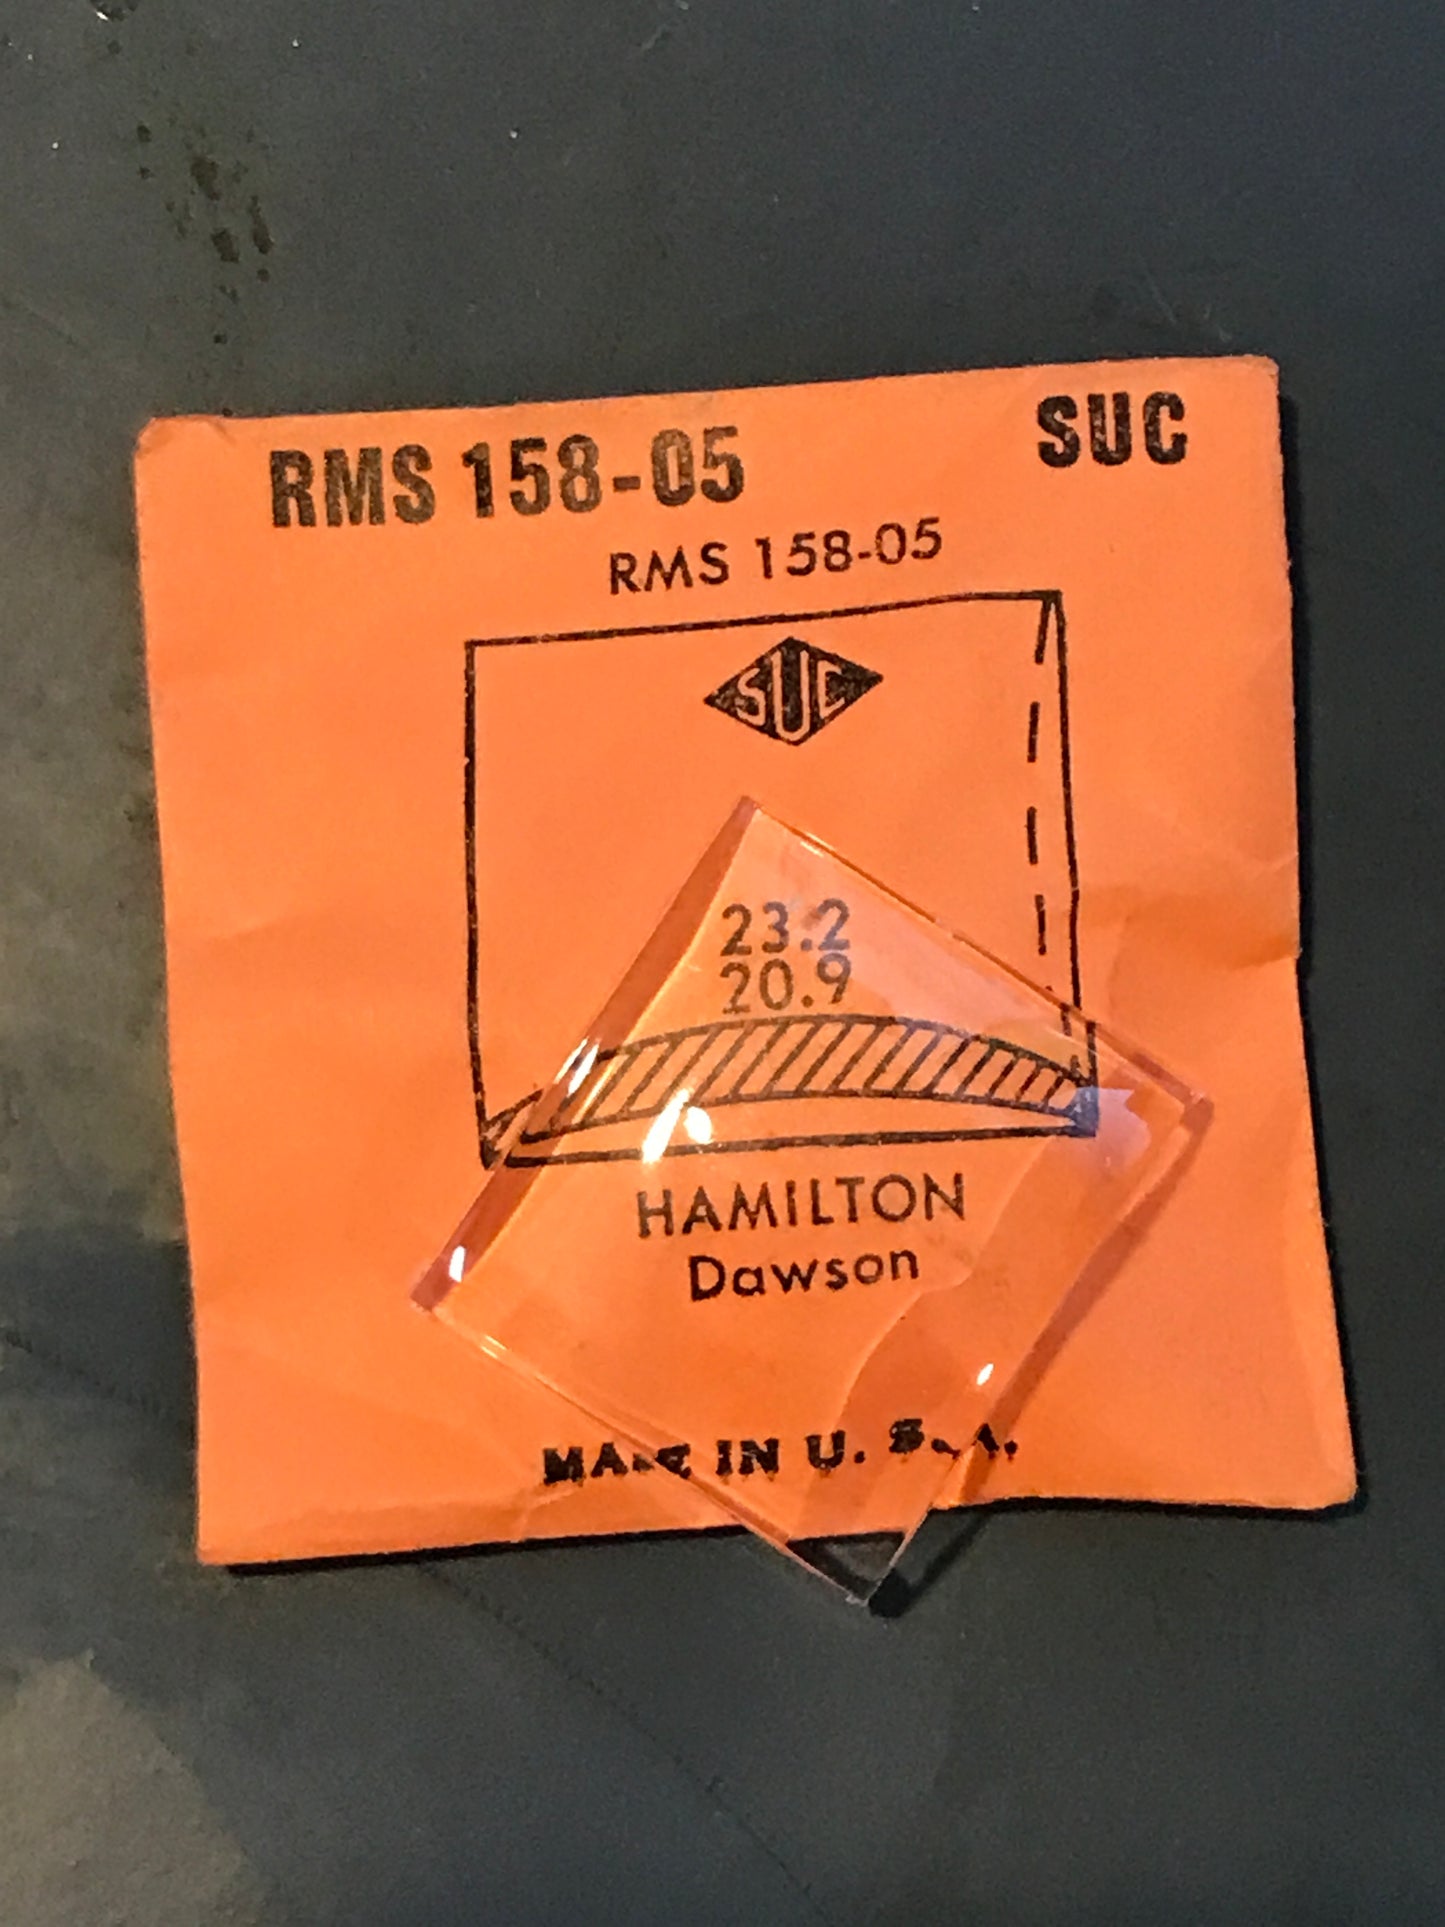 SUC Rocket Crystal RMS 158-05 for HAMILTON Dawson - 23.2 x 20.9mm - New